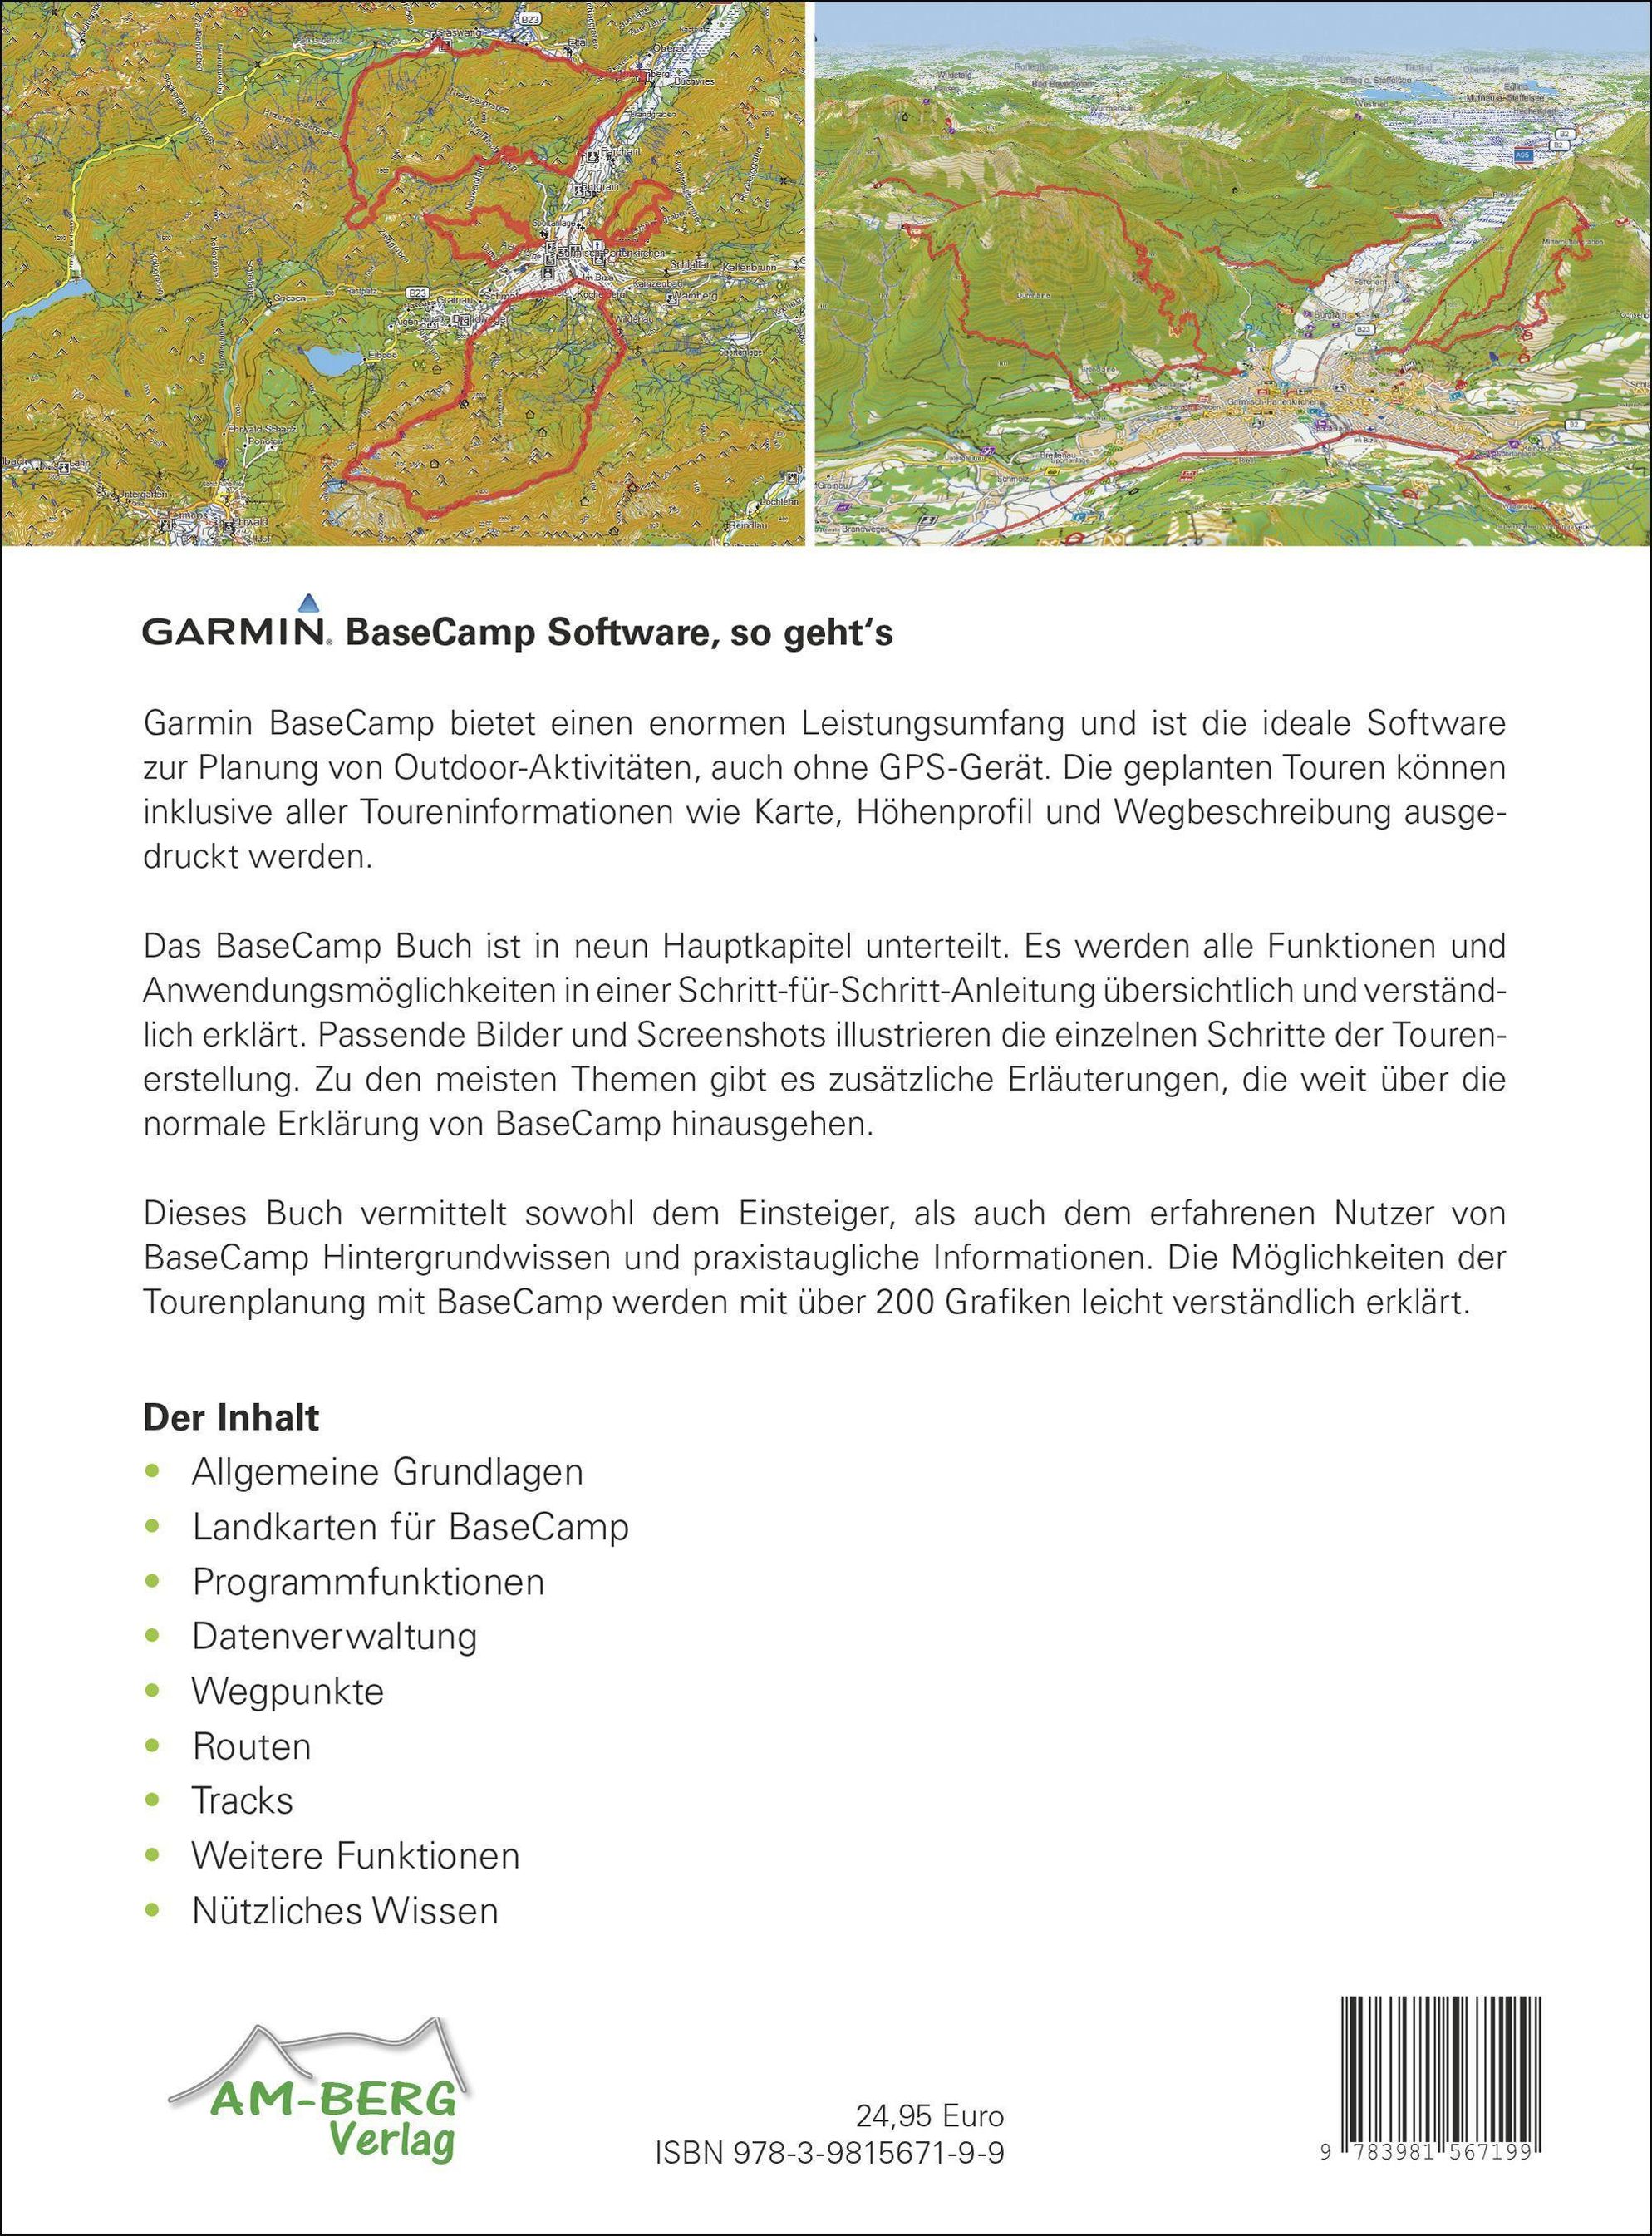 Garmin BaseCamp Software, so geht's Buch versandkostenfrei - Weltbild.de